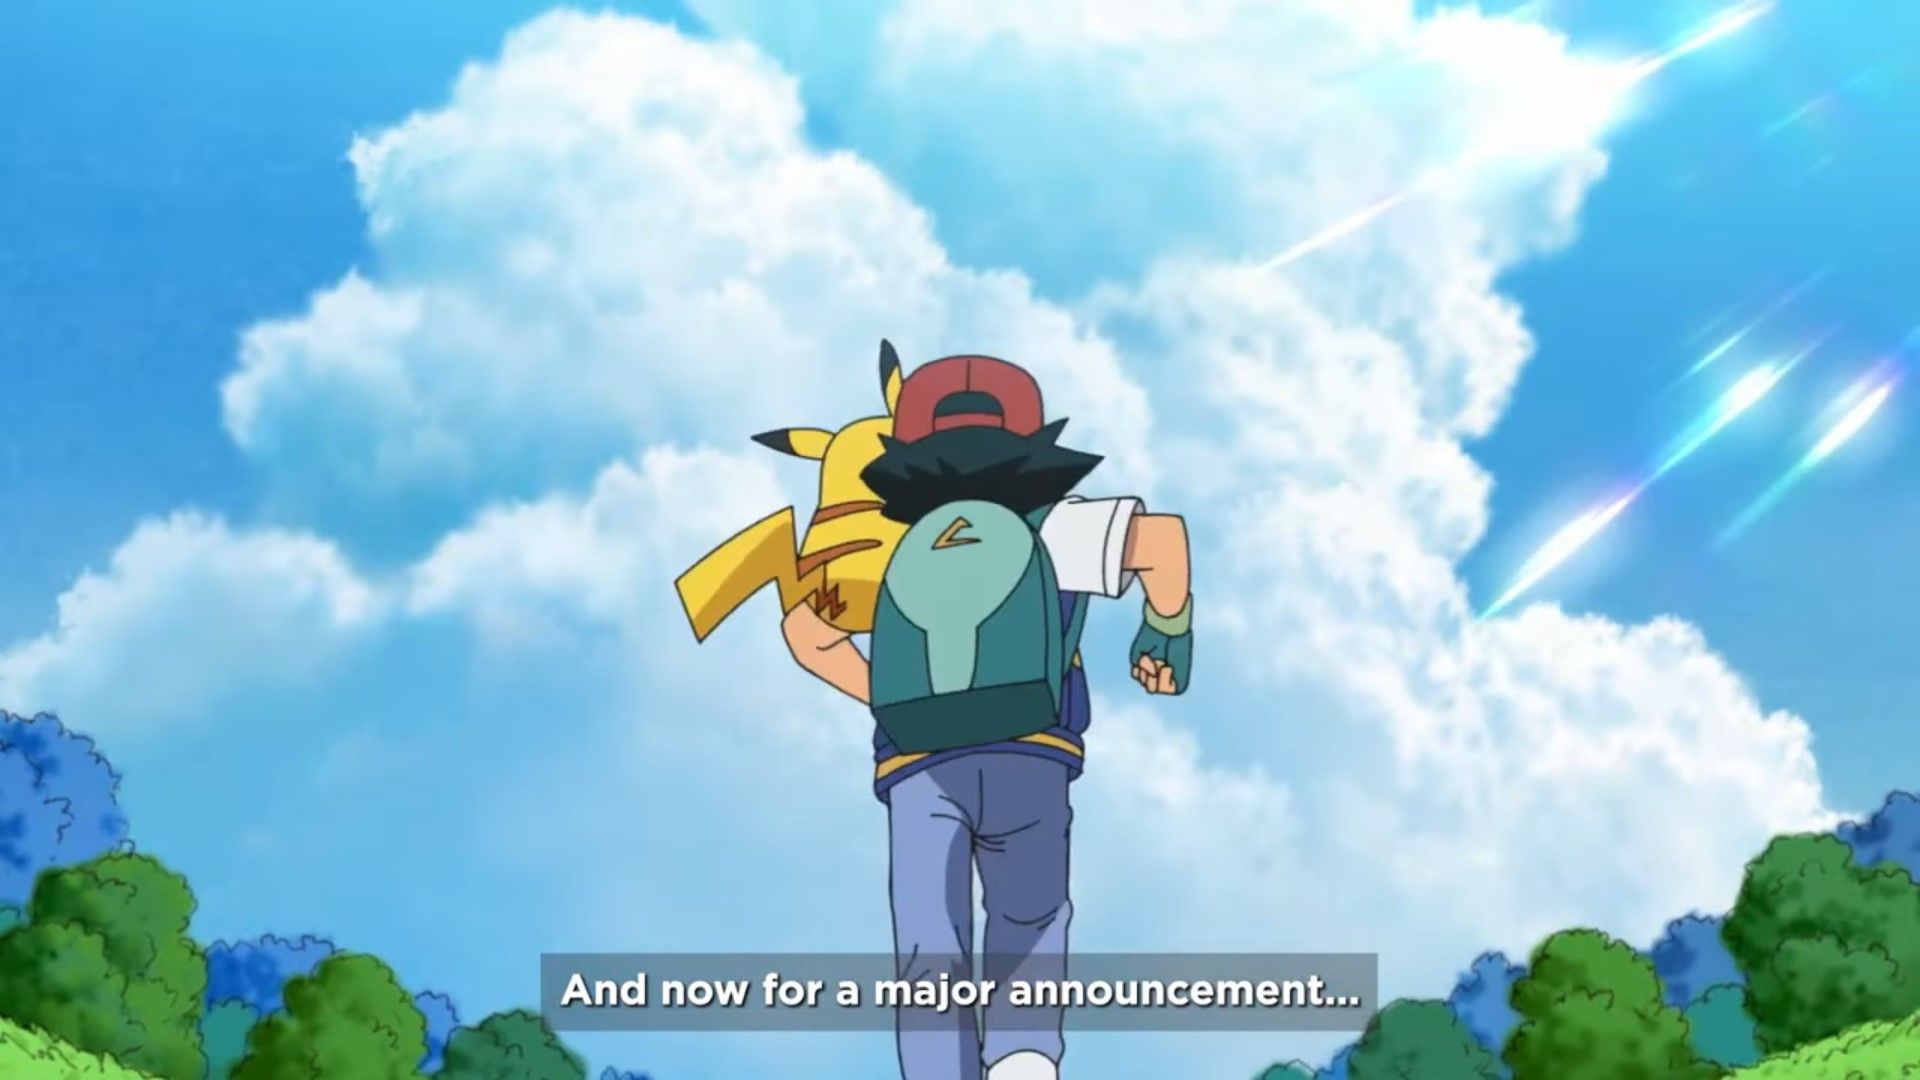 Ash's ENDING REVEALED. Pokémon Journeys CONFIRMS THE END Of Ash Ketchum &  FINAL Pokémon Episode - YouTube